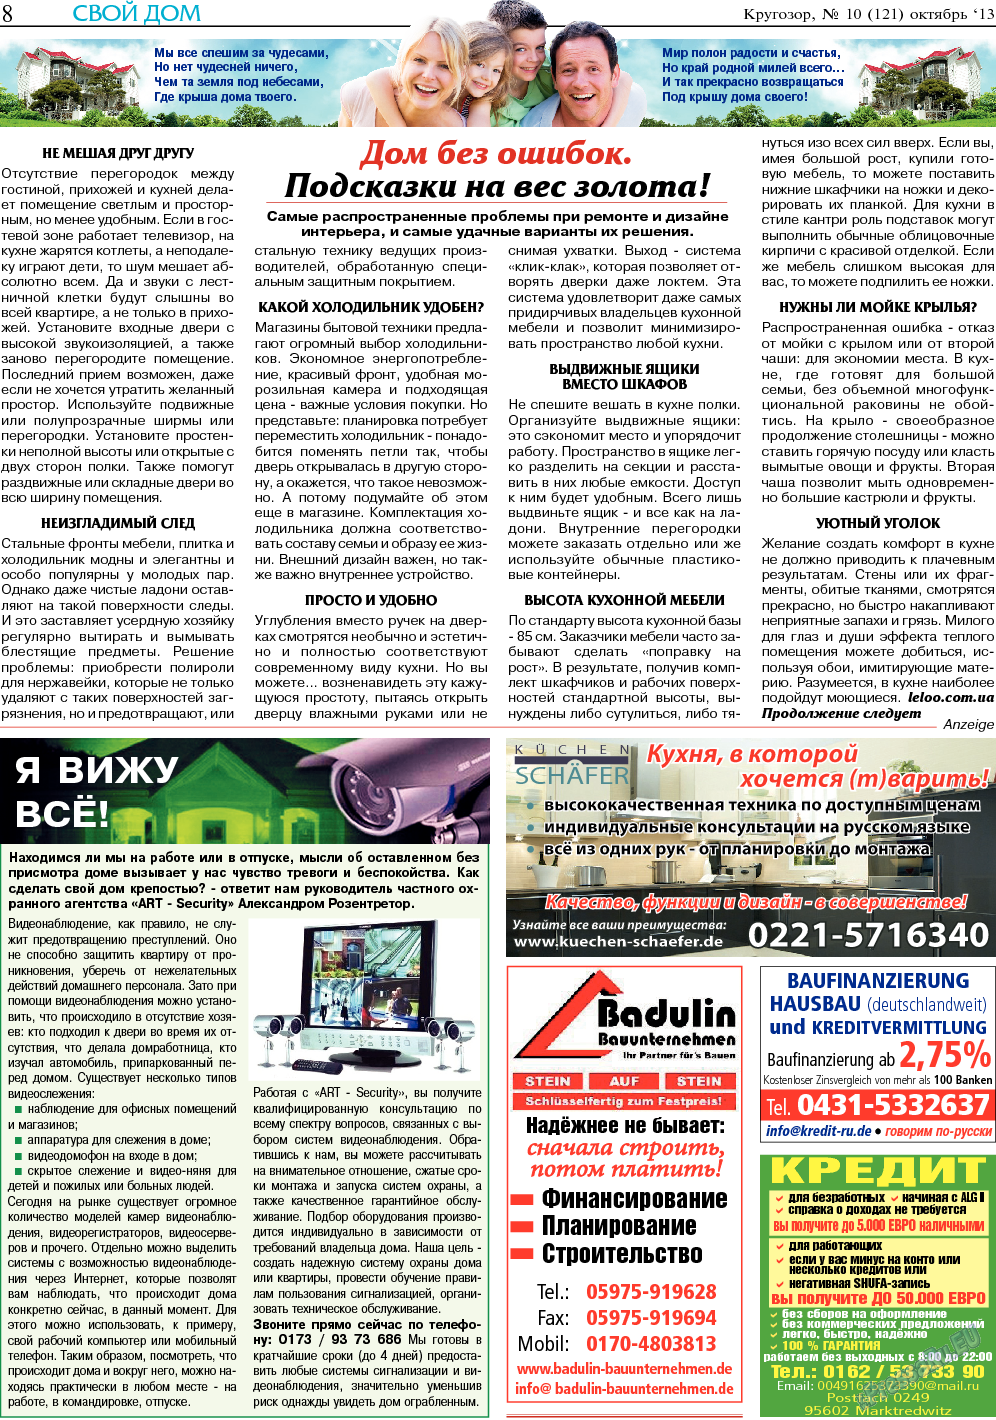 Кругозор, газета. 2013 №10 стр.8